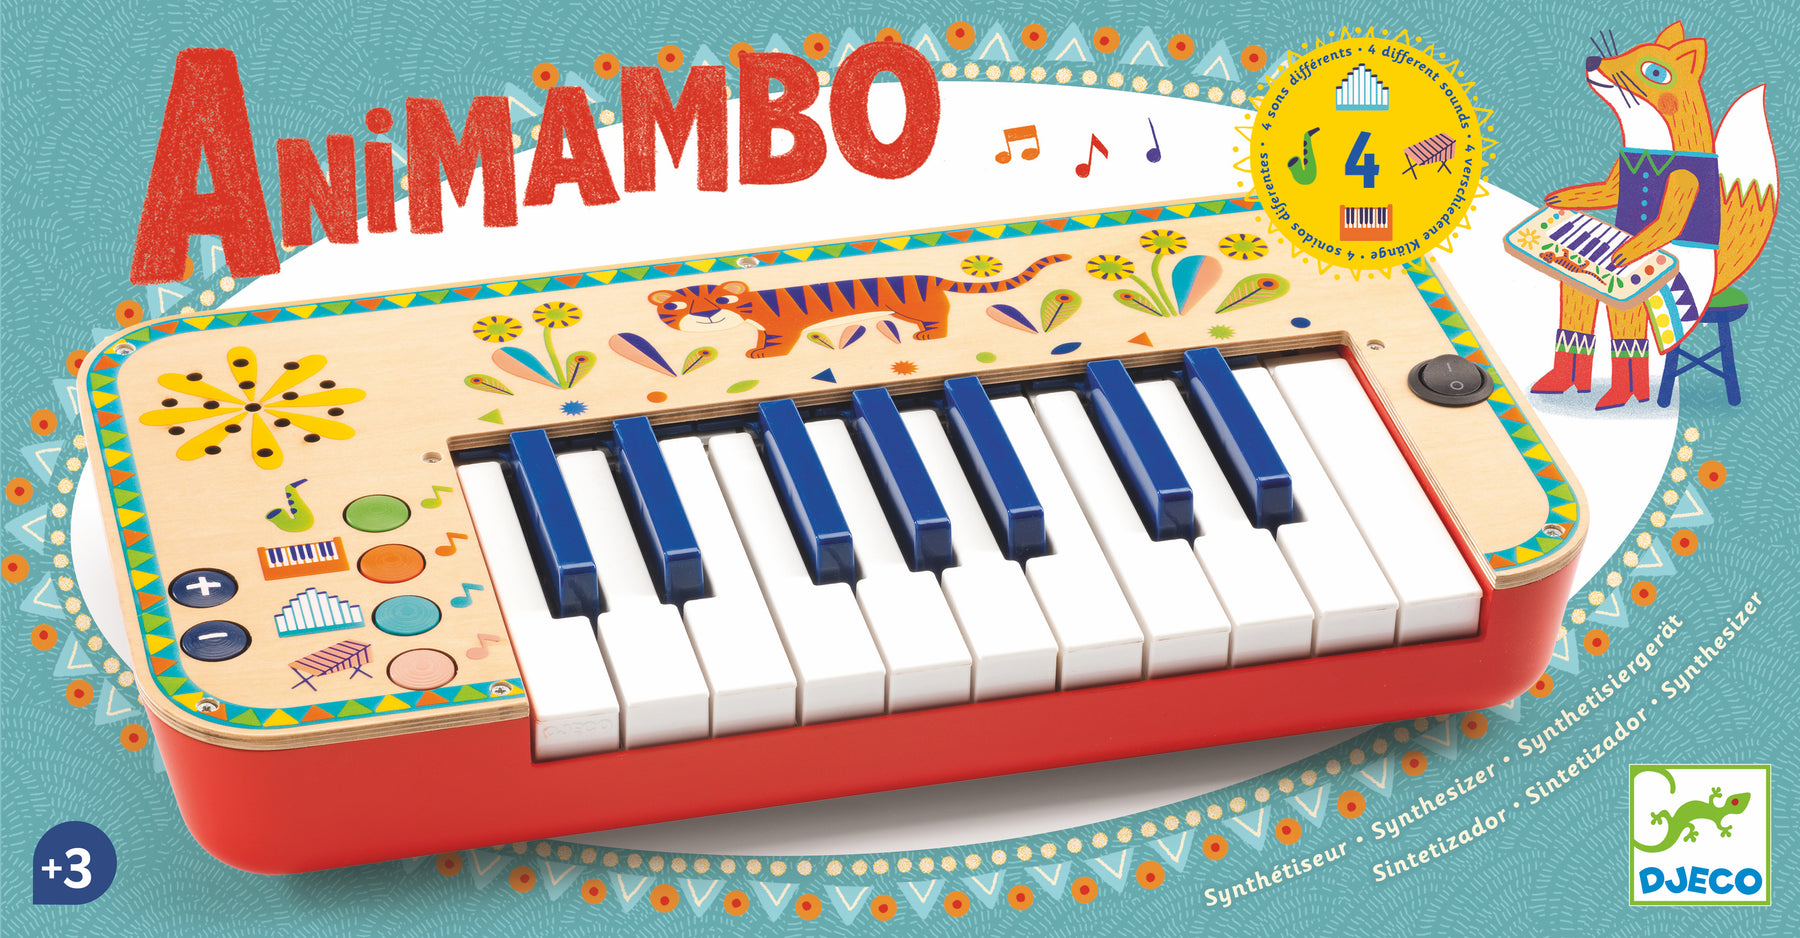 Animambo Synthesizer - JKA Toys